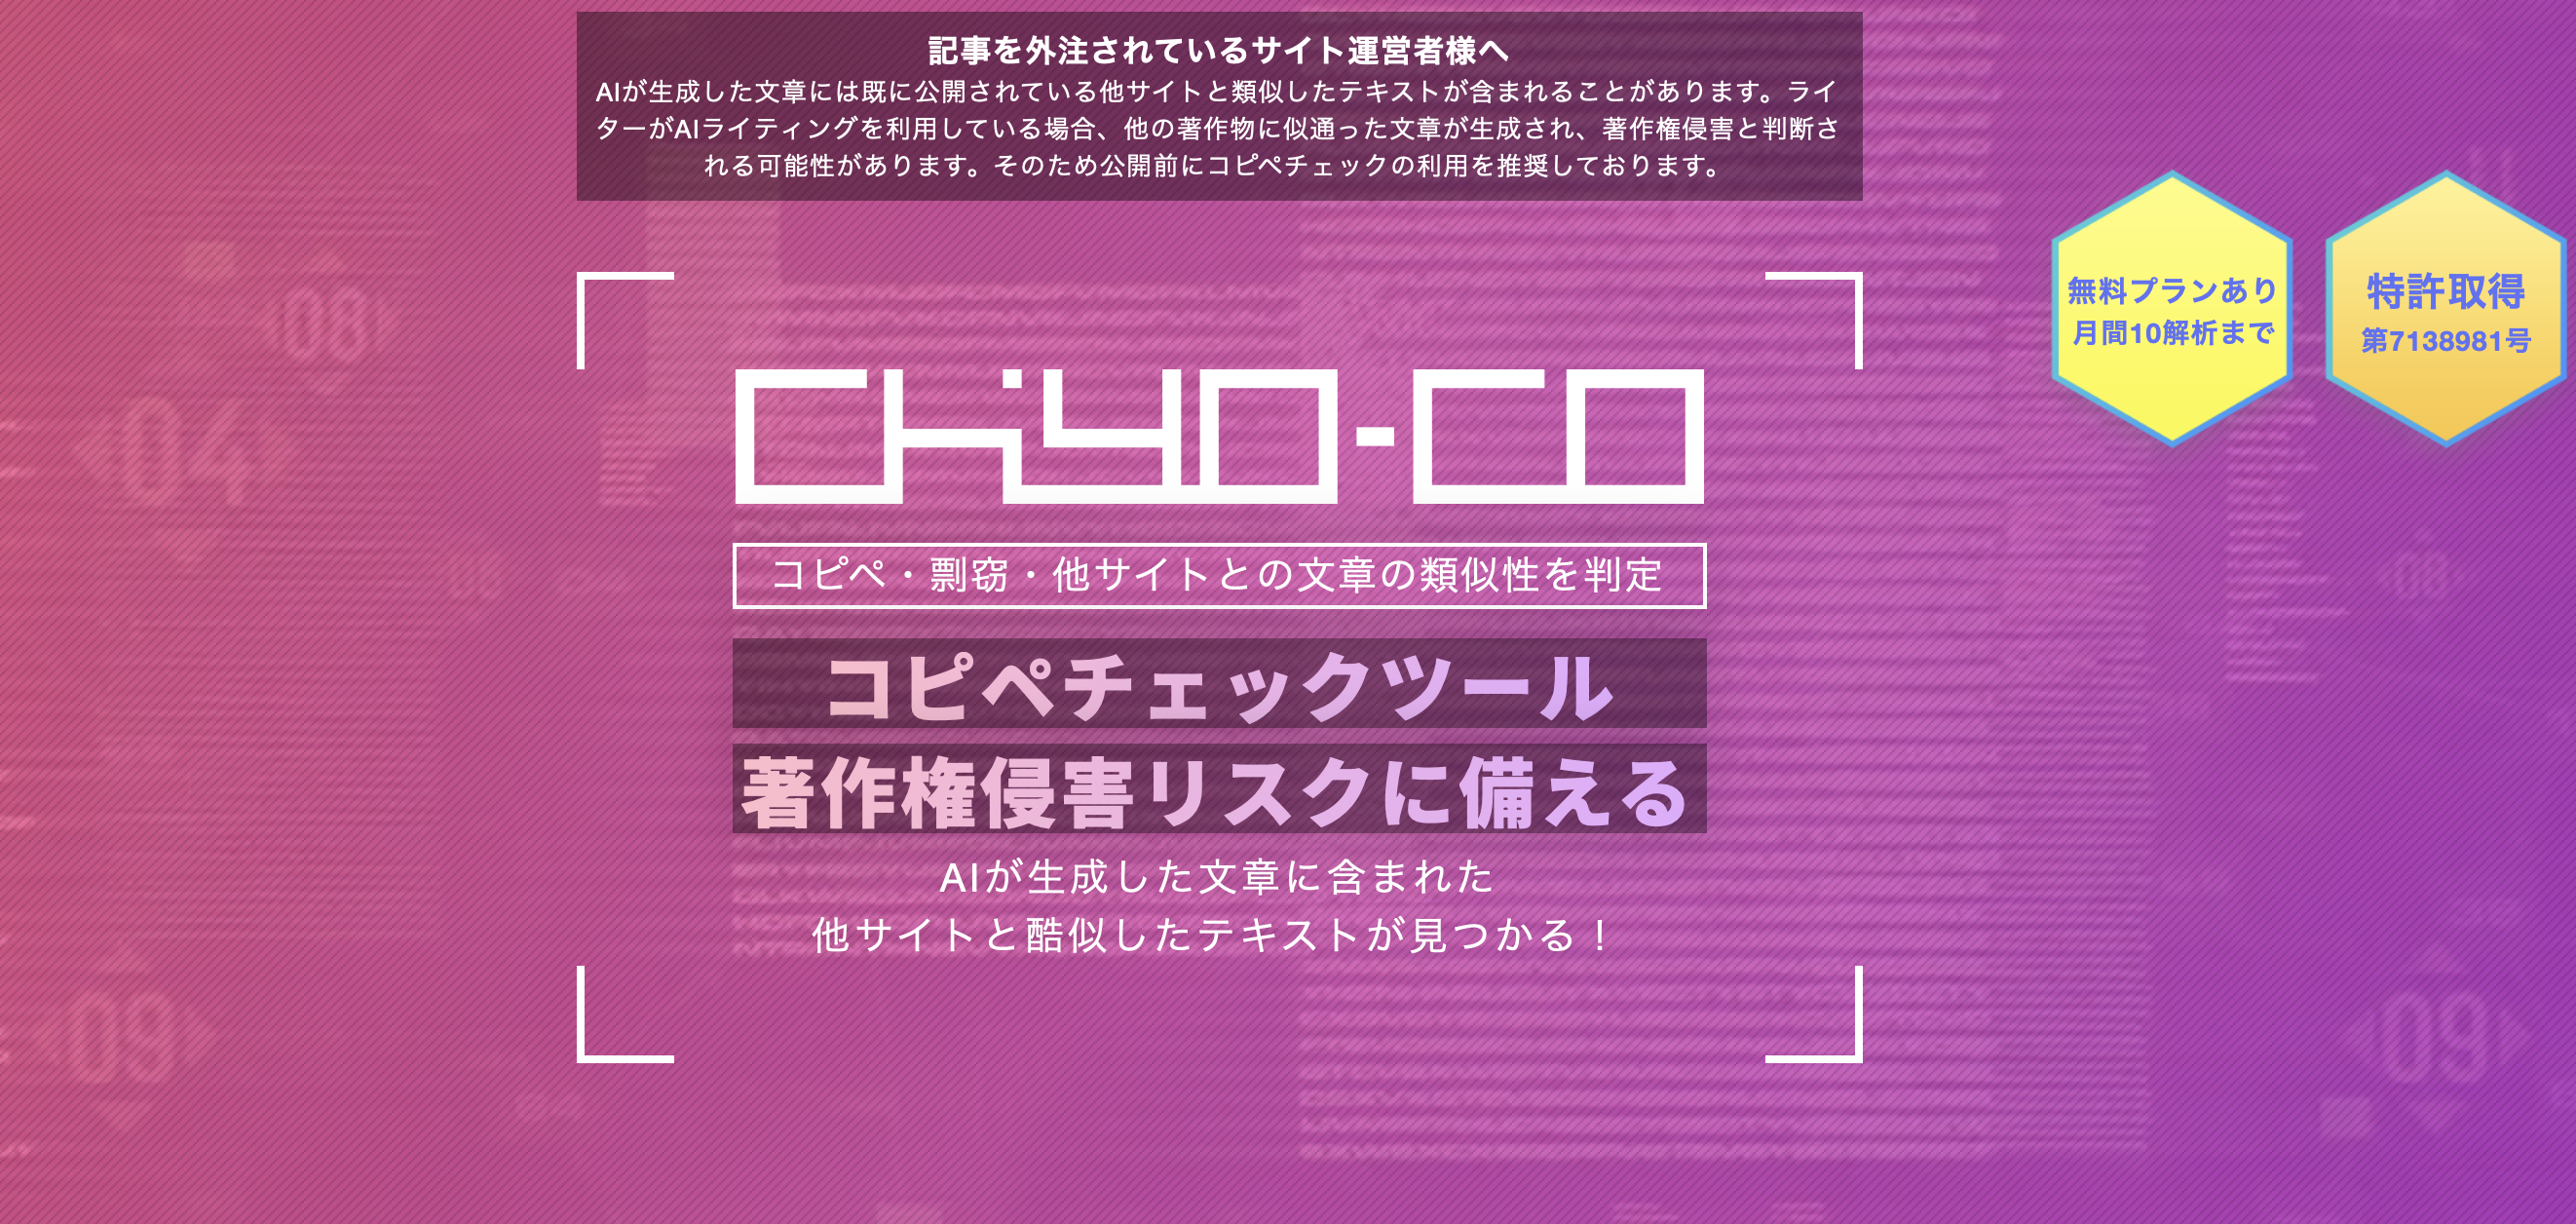 「chiyo-co」参考サイト：https://kagemusya.biz-samurai.com